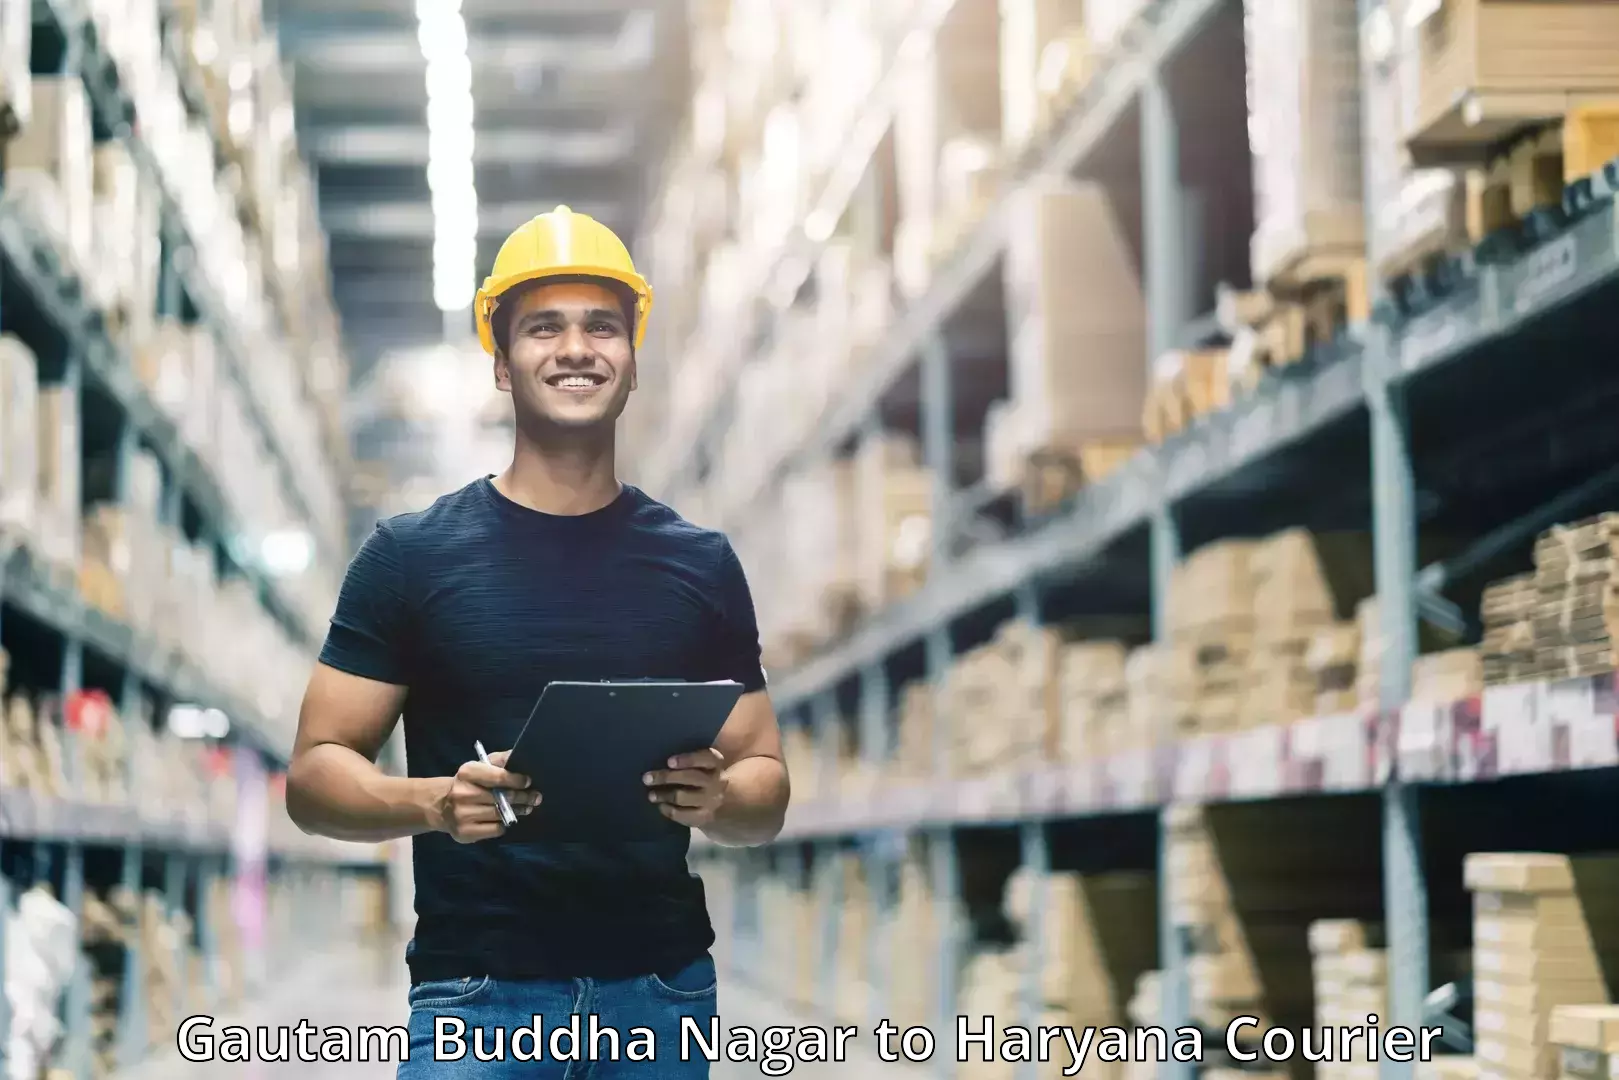 Customer-focused courier Gautam Buddha Nagar to Kurukshetra